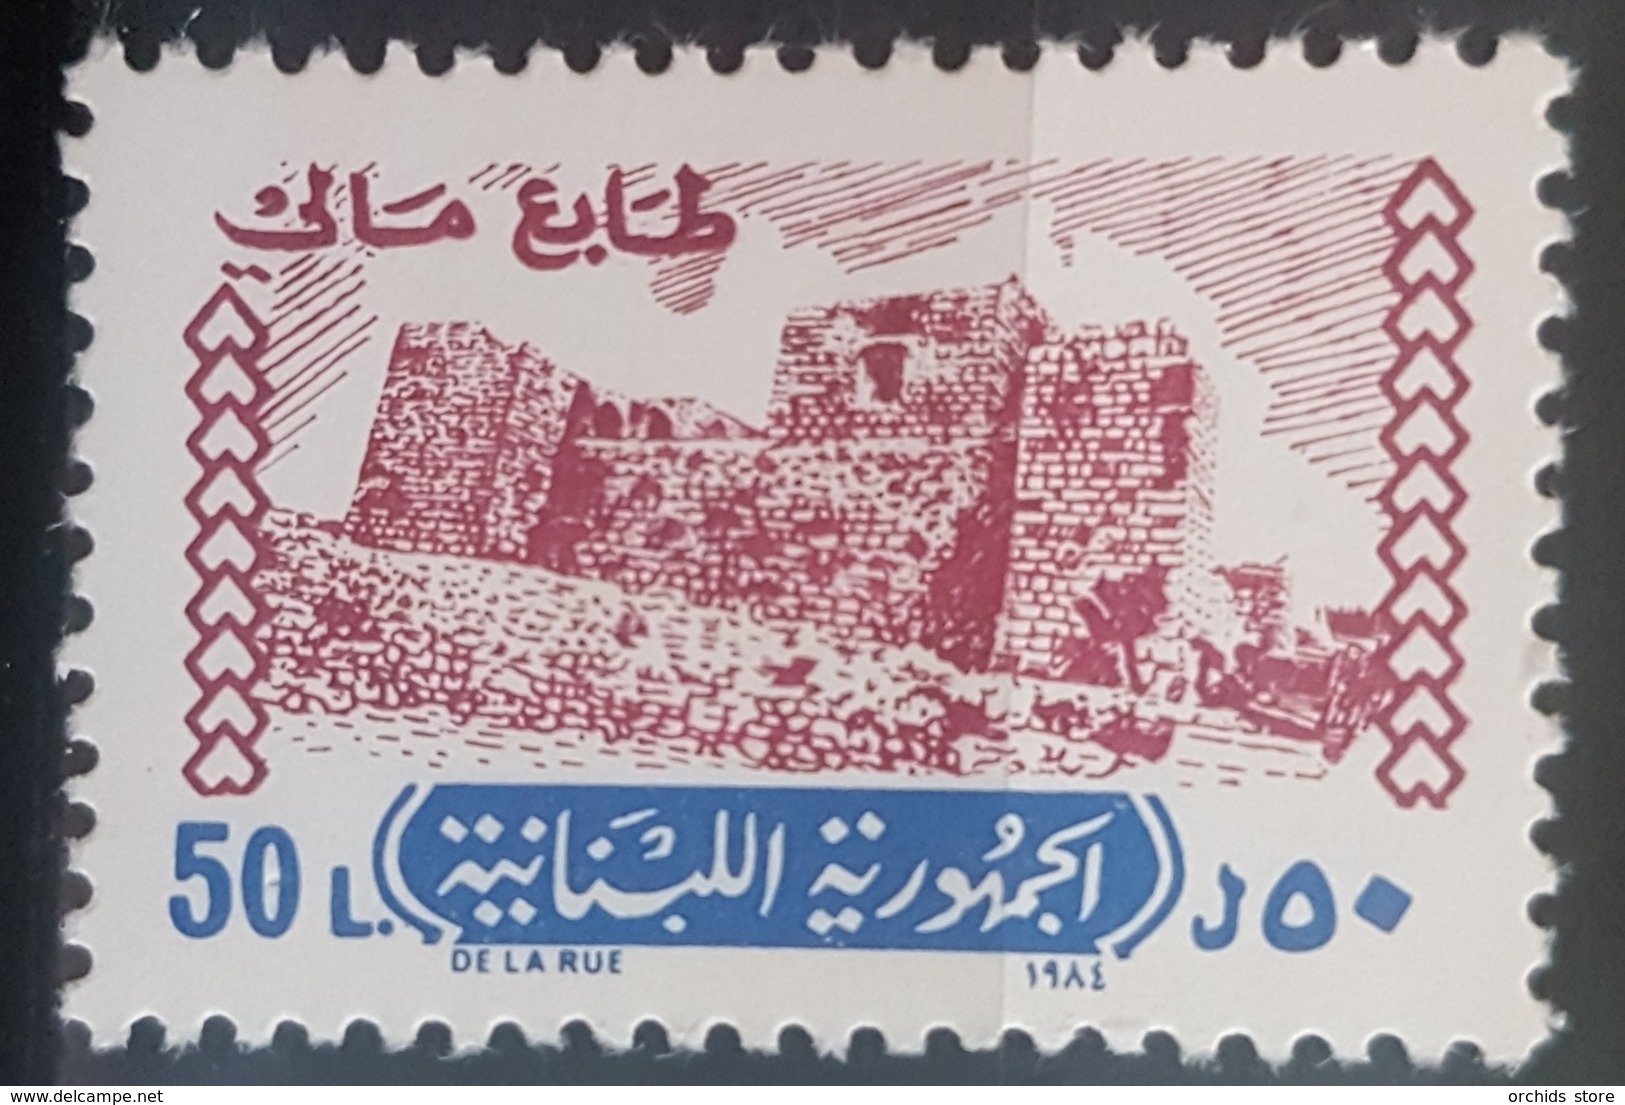 NO11 - Lebanon 1984 Fiscal Revenue Stamp Ciradel 50L MNH - Lebanon